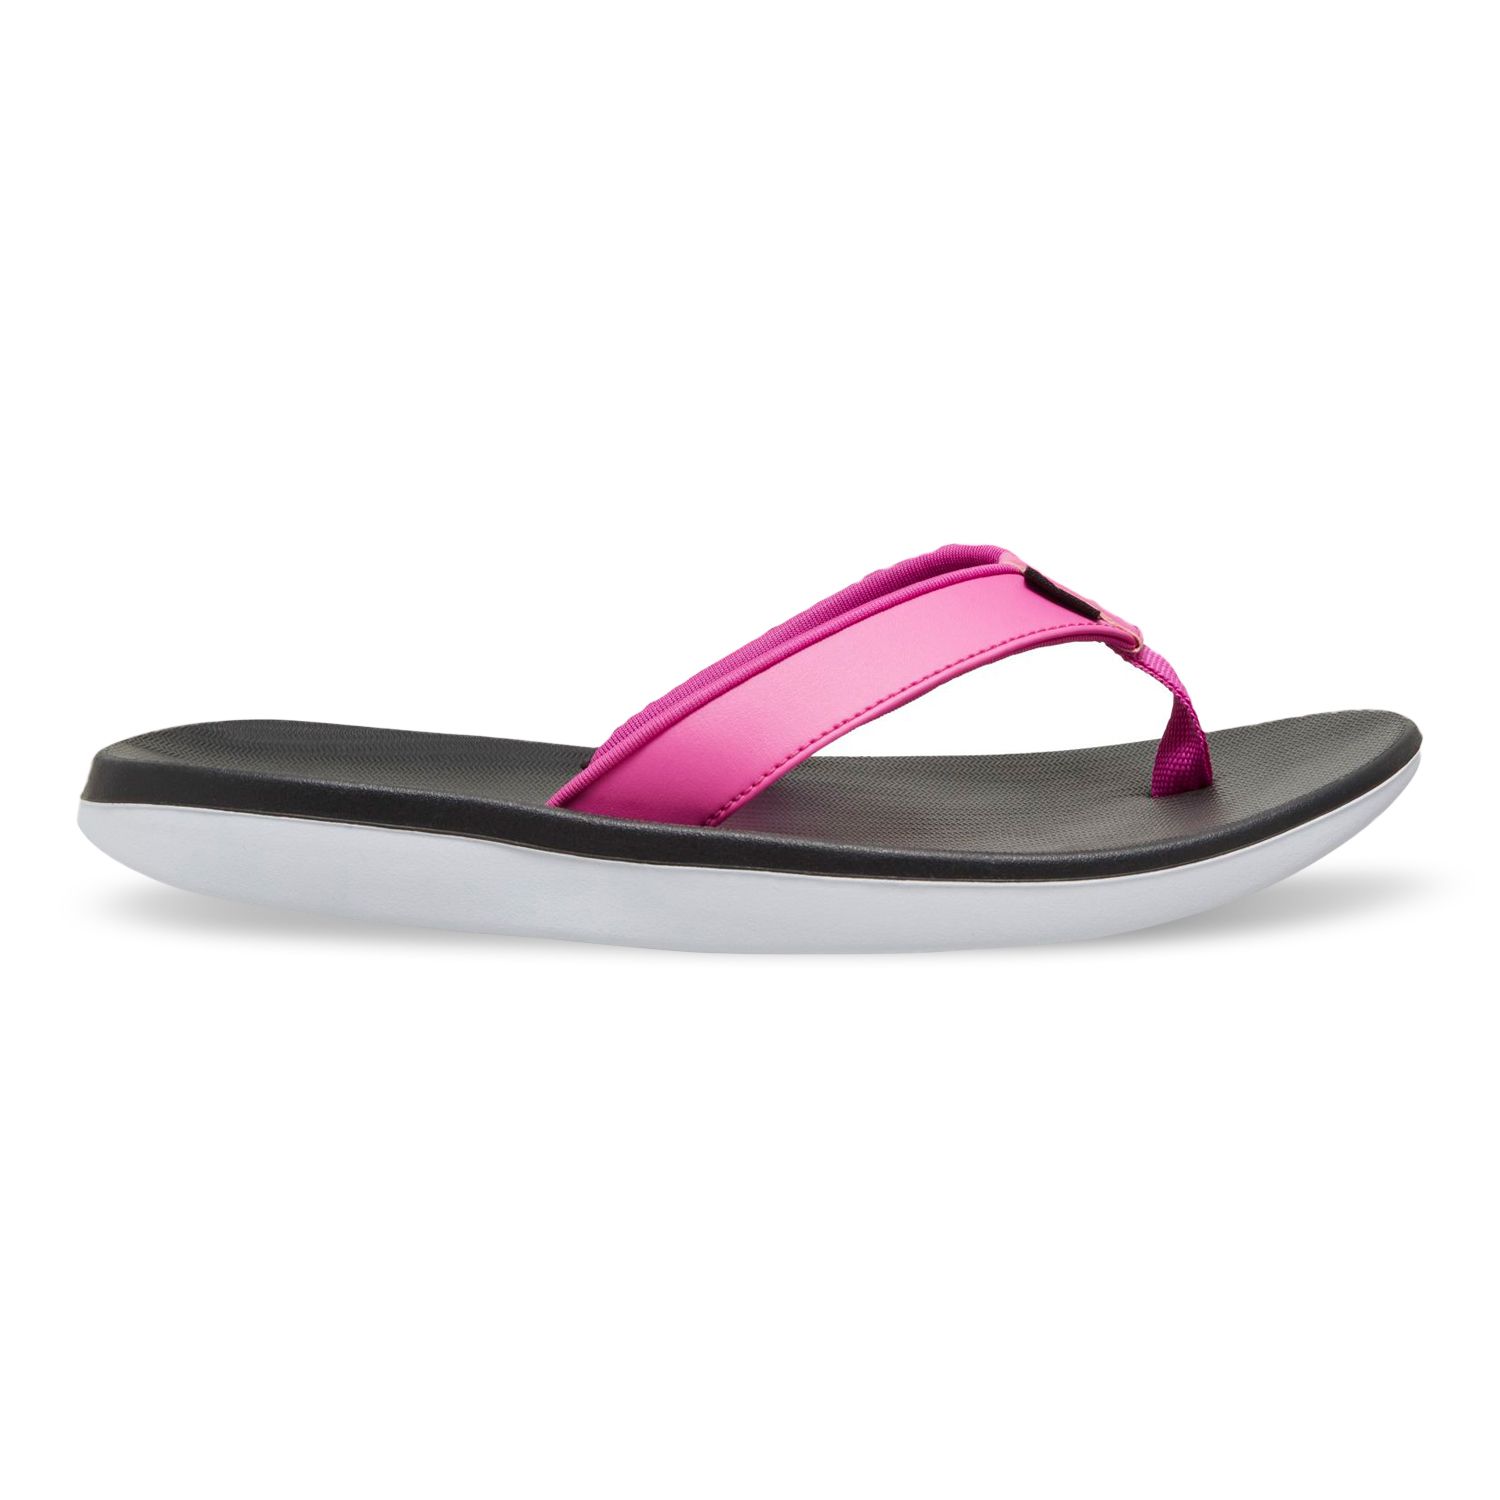 black and pink flip flops